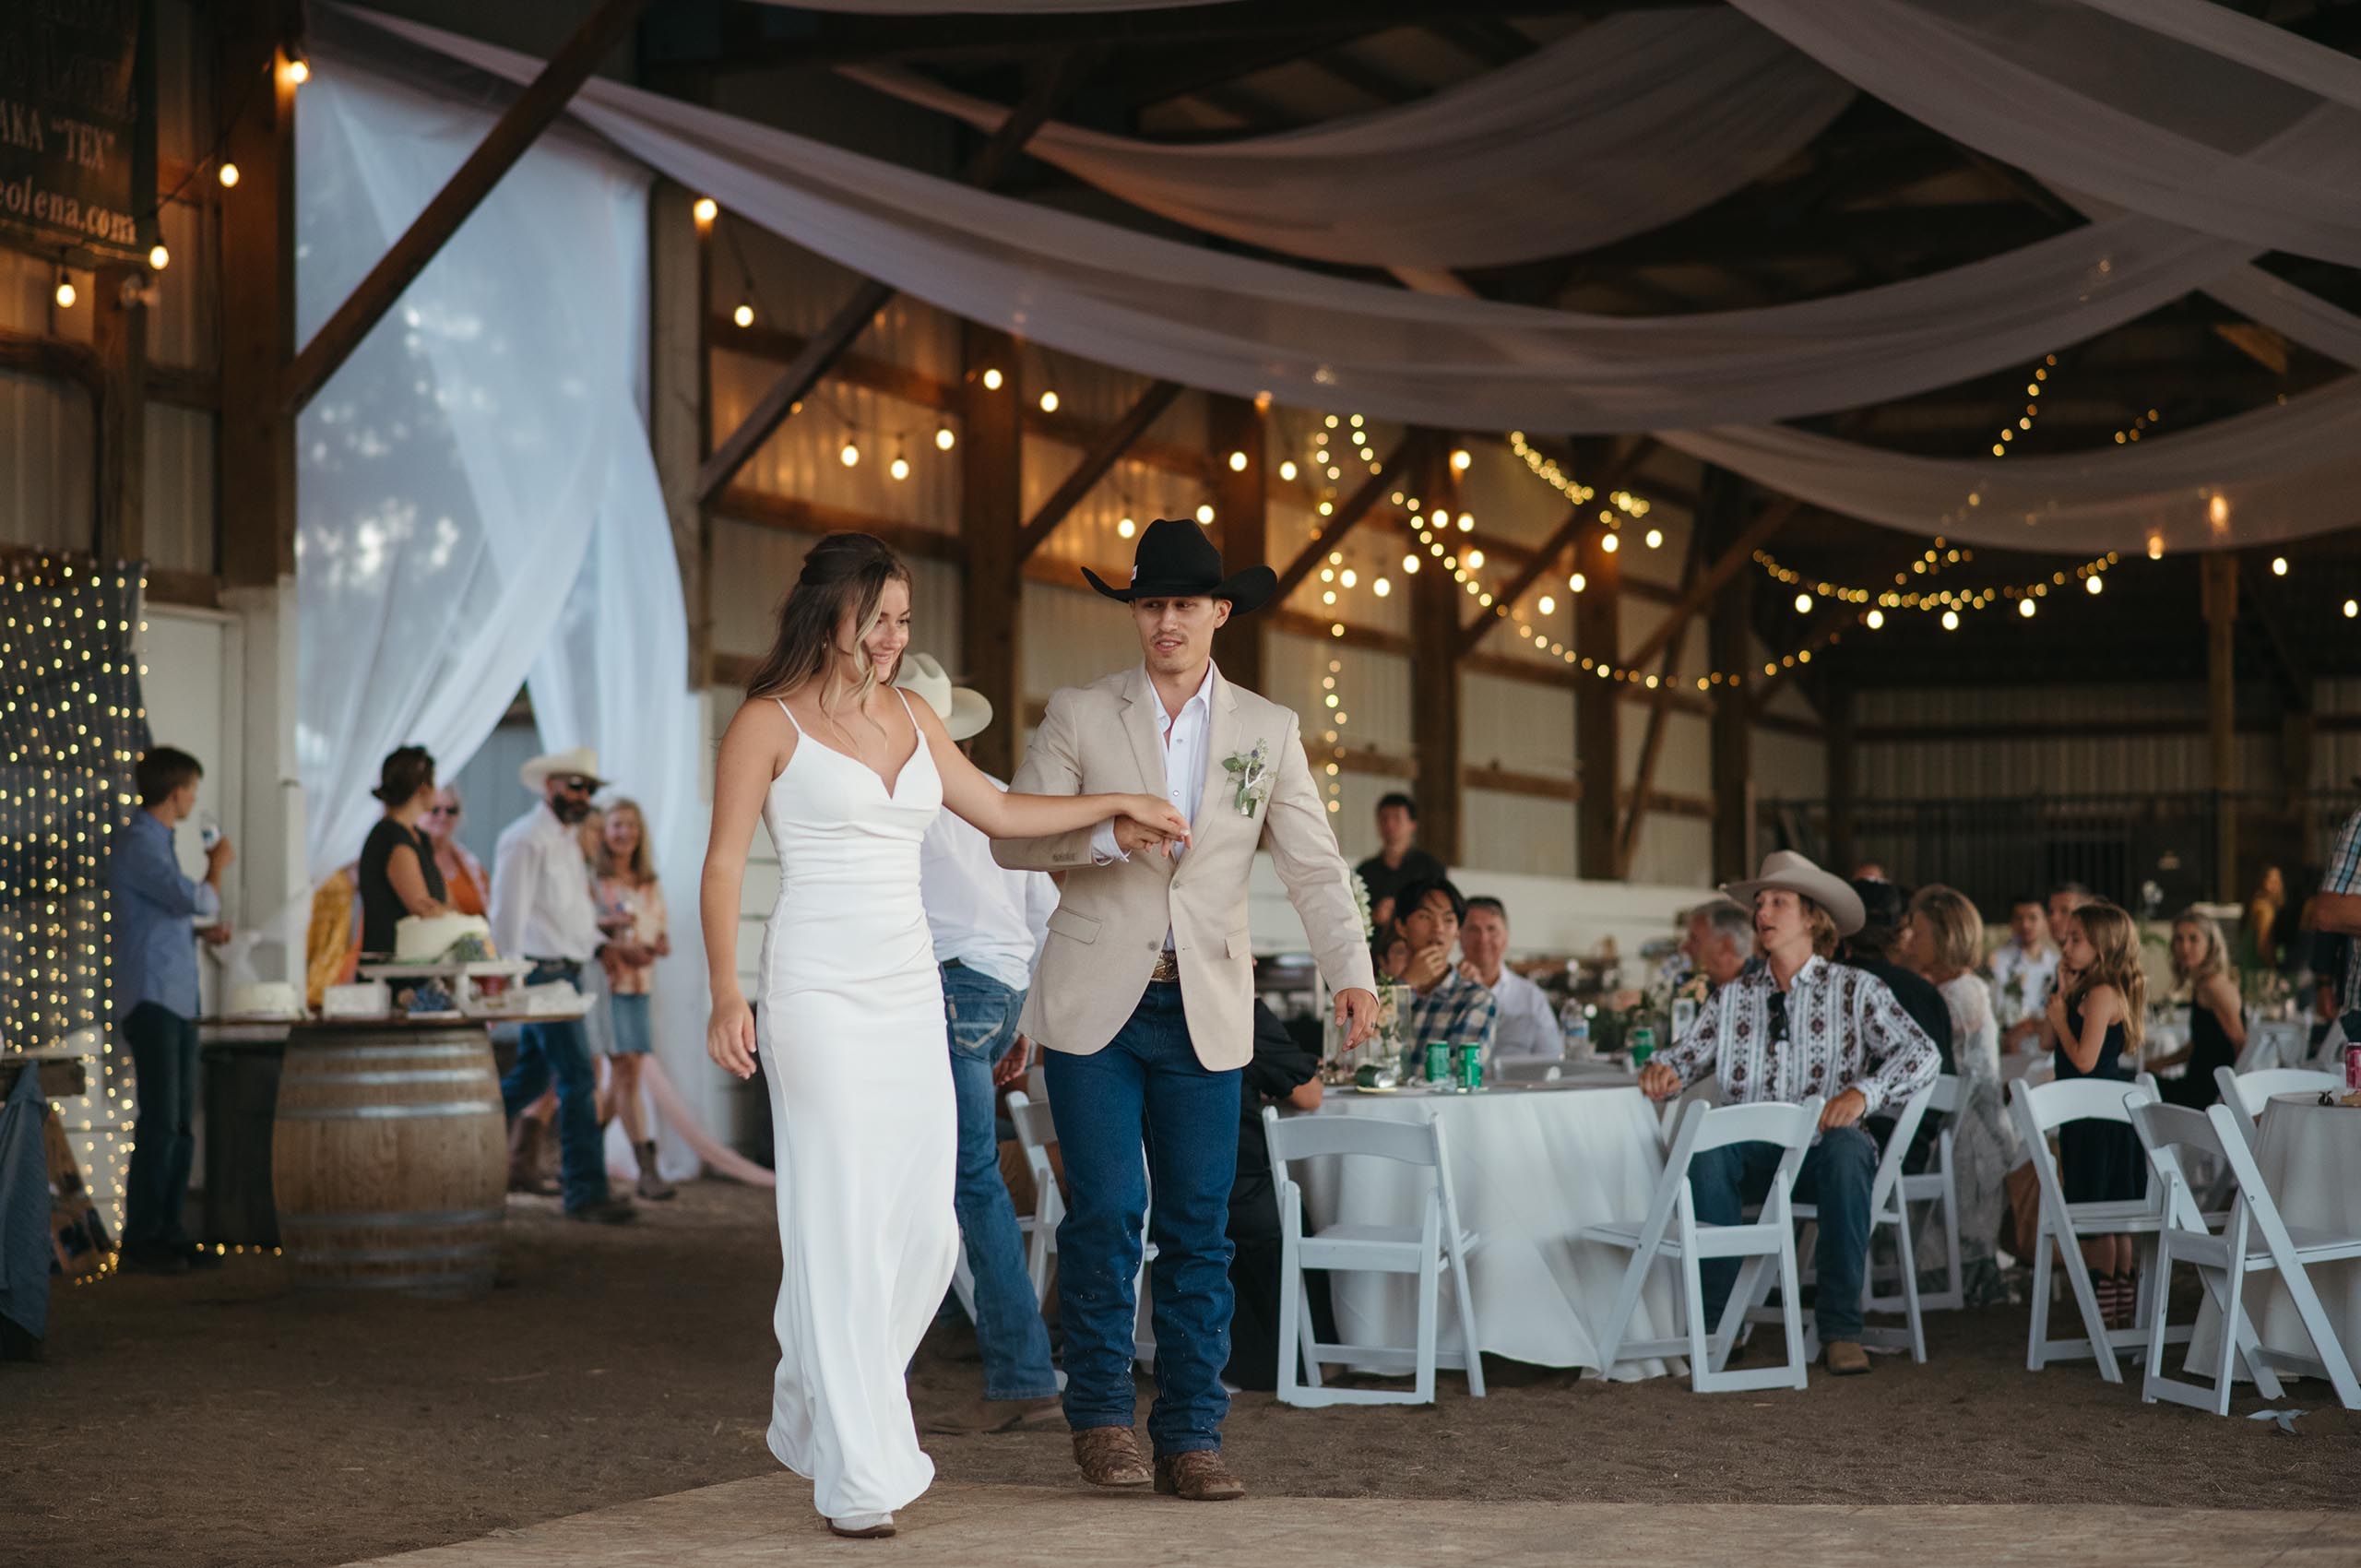 Oregon farm wedding reception5.jpg